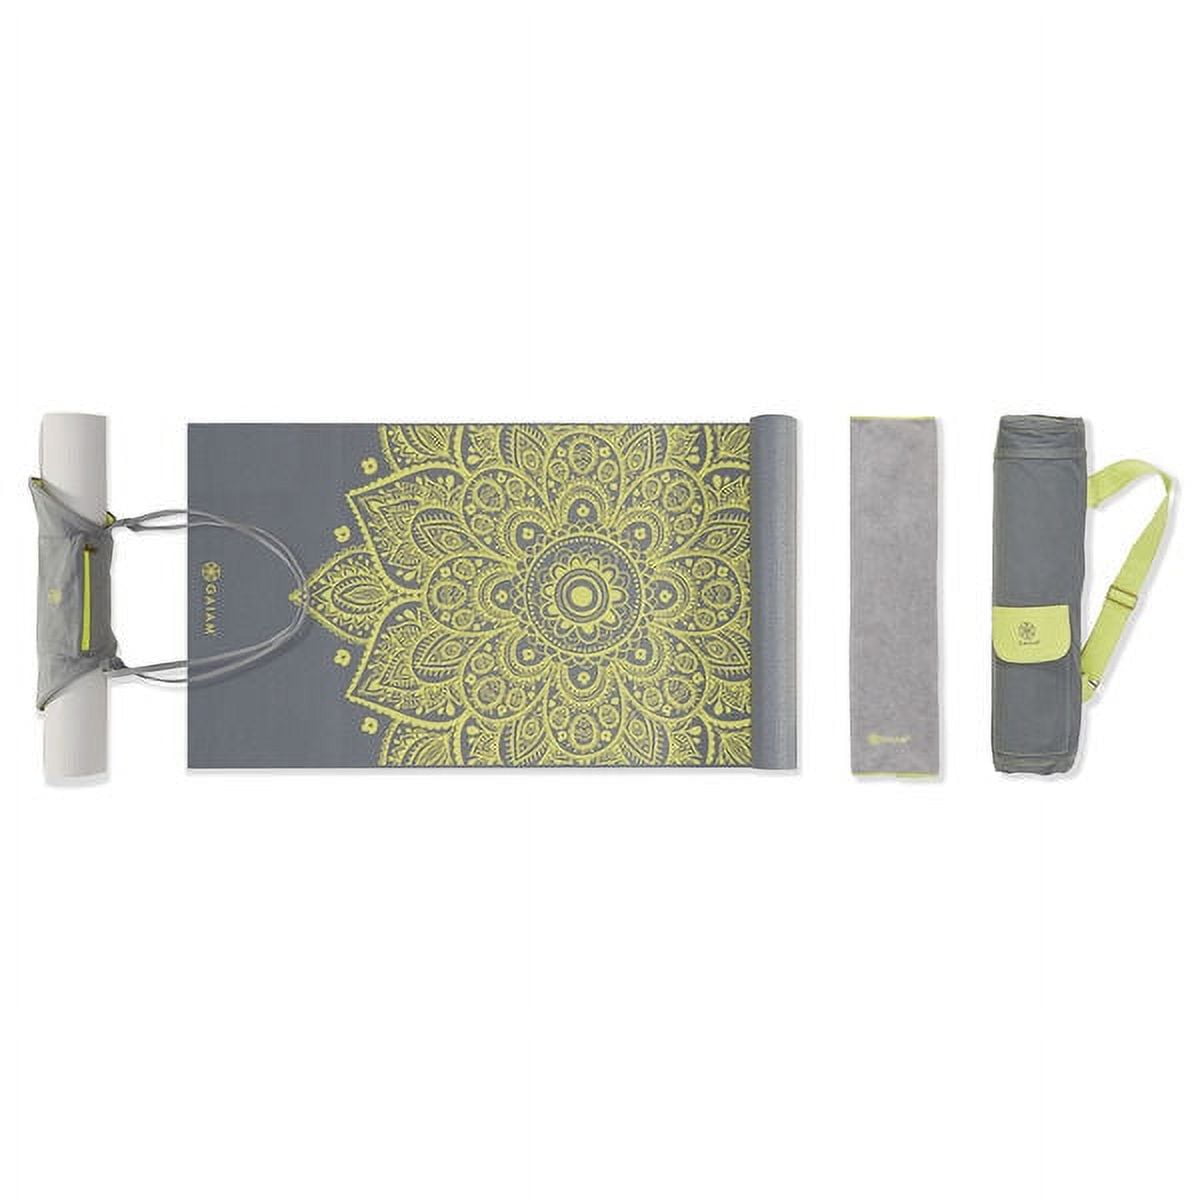 Gaiam Premium Print Yoga Mat, Citron Sundial, 6mm